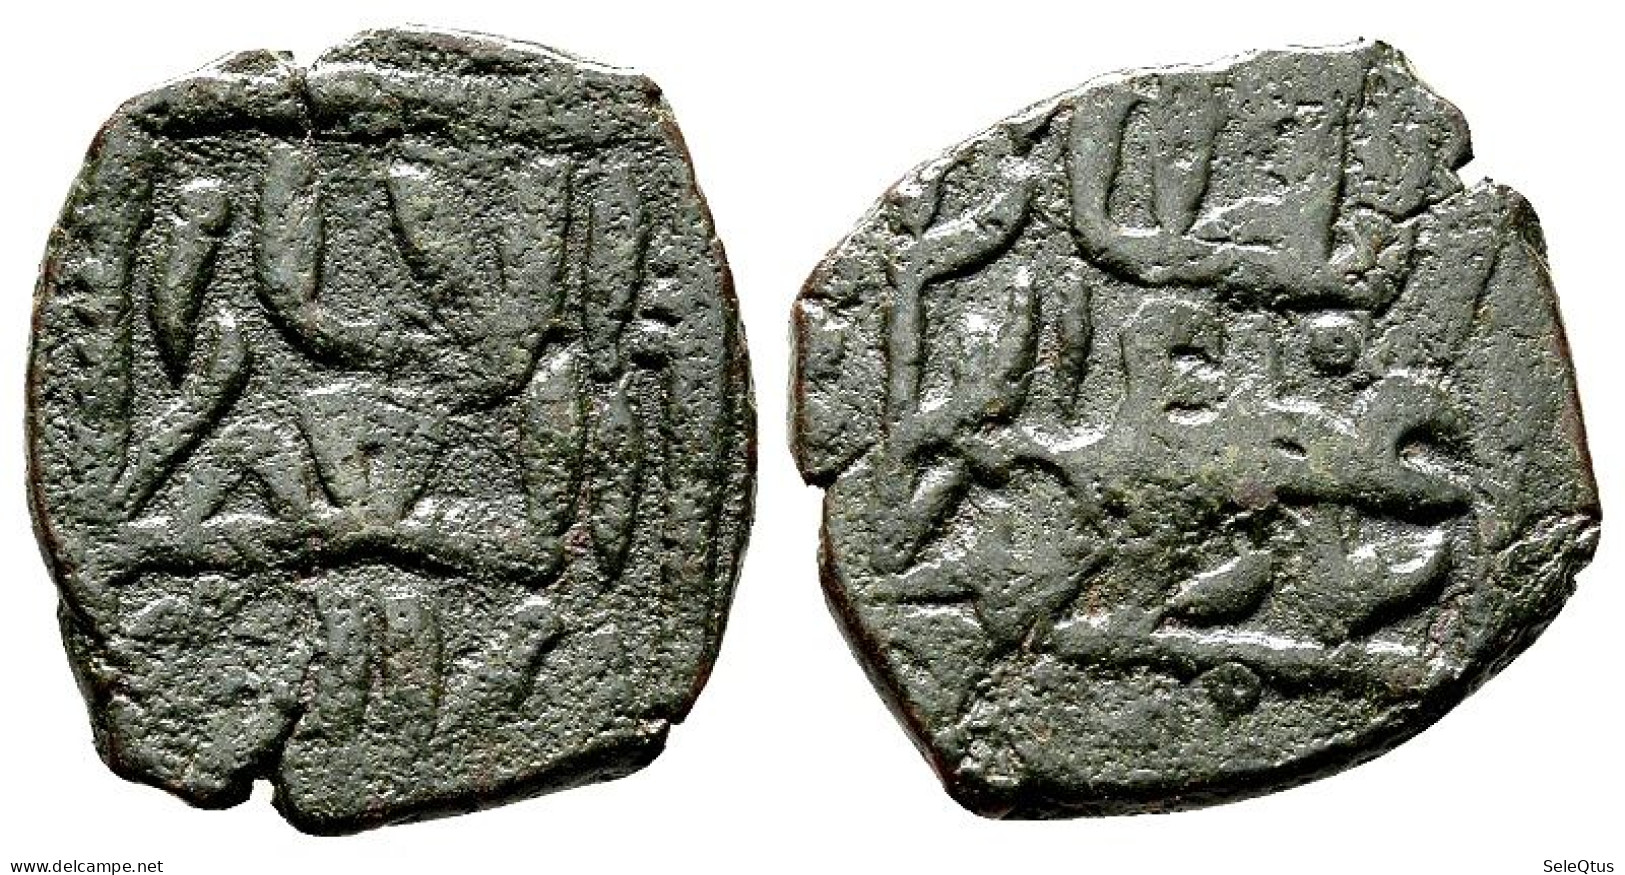 Monedas Antiguas - Islámicas (A148-008-199-1100) - Islamitisch